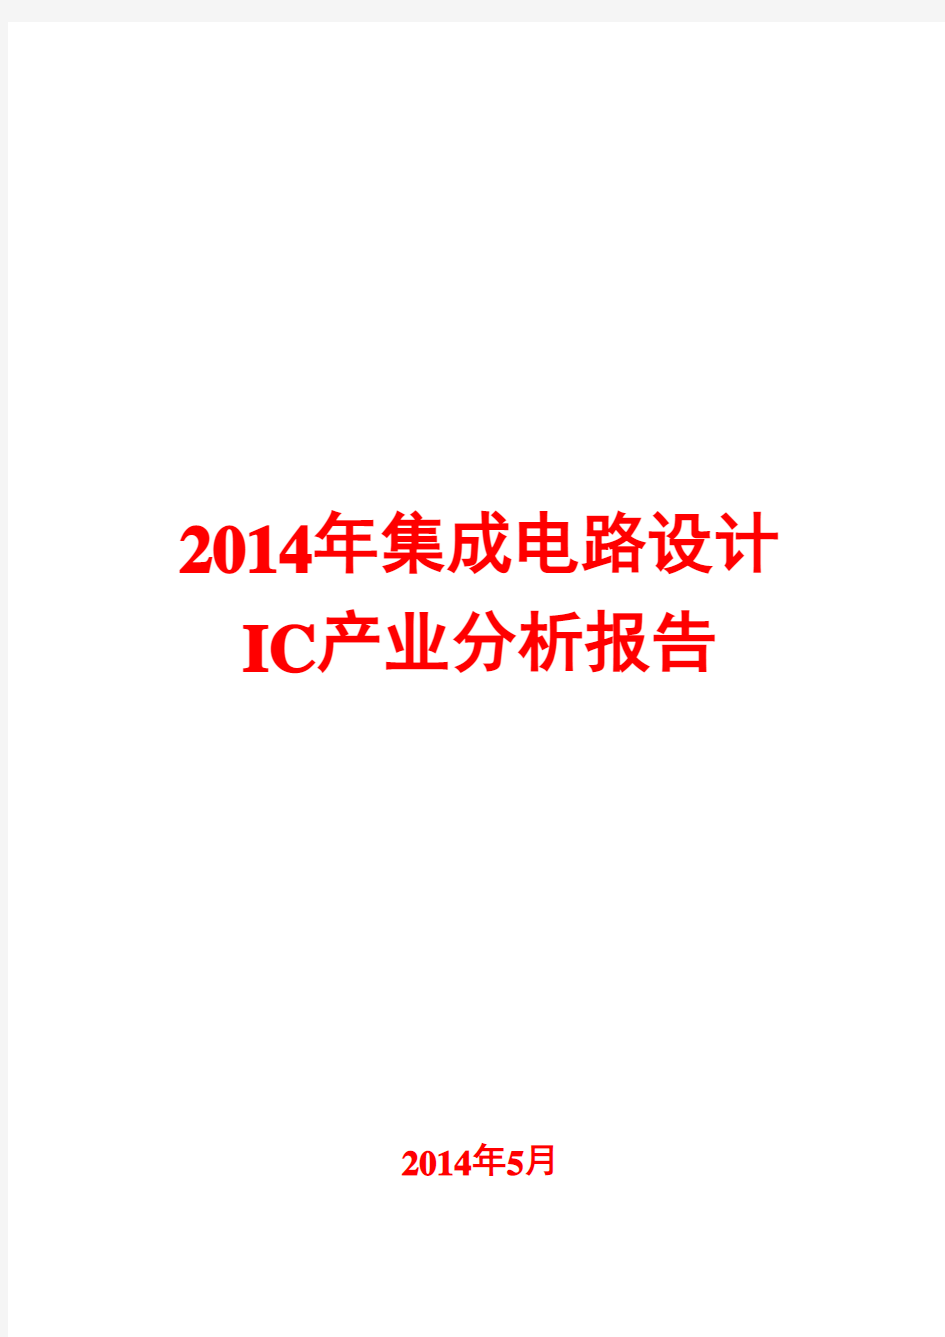 2014年集成电路设计IC产业分析报告